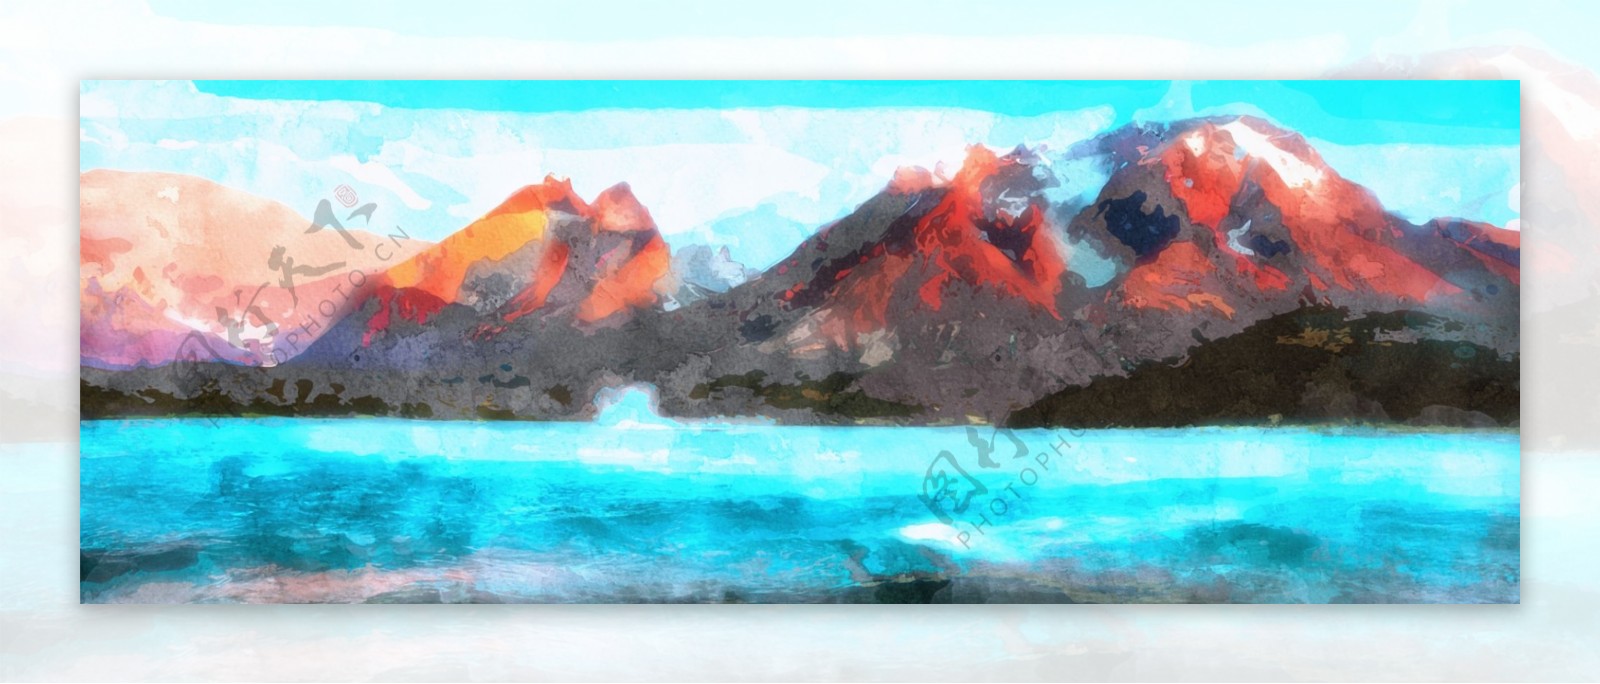 全原创手绘水彩天空火山水风景背景